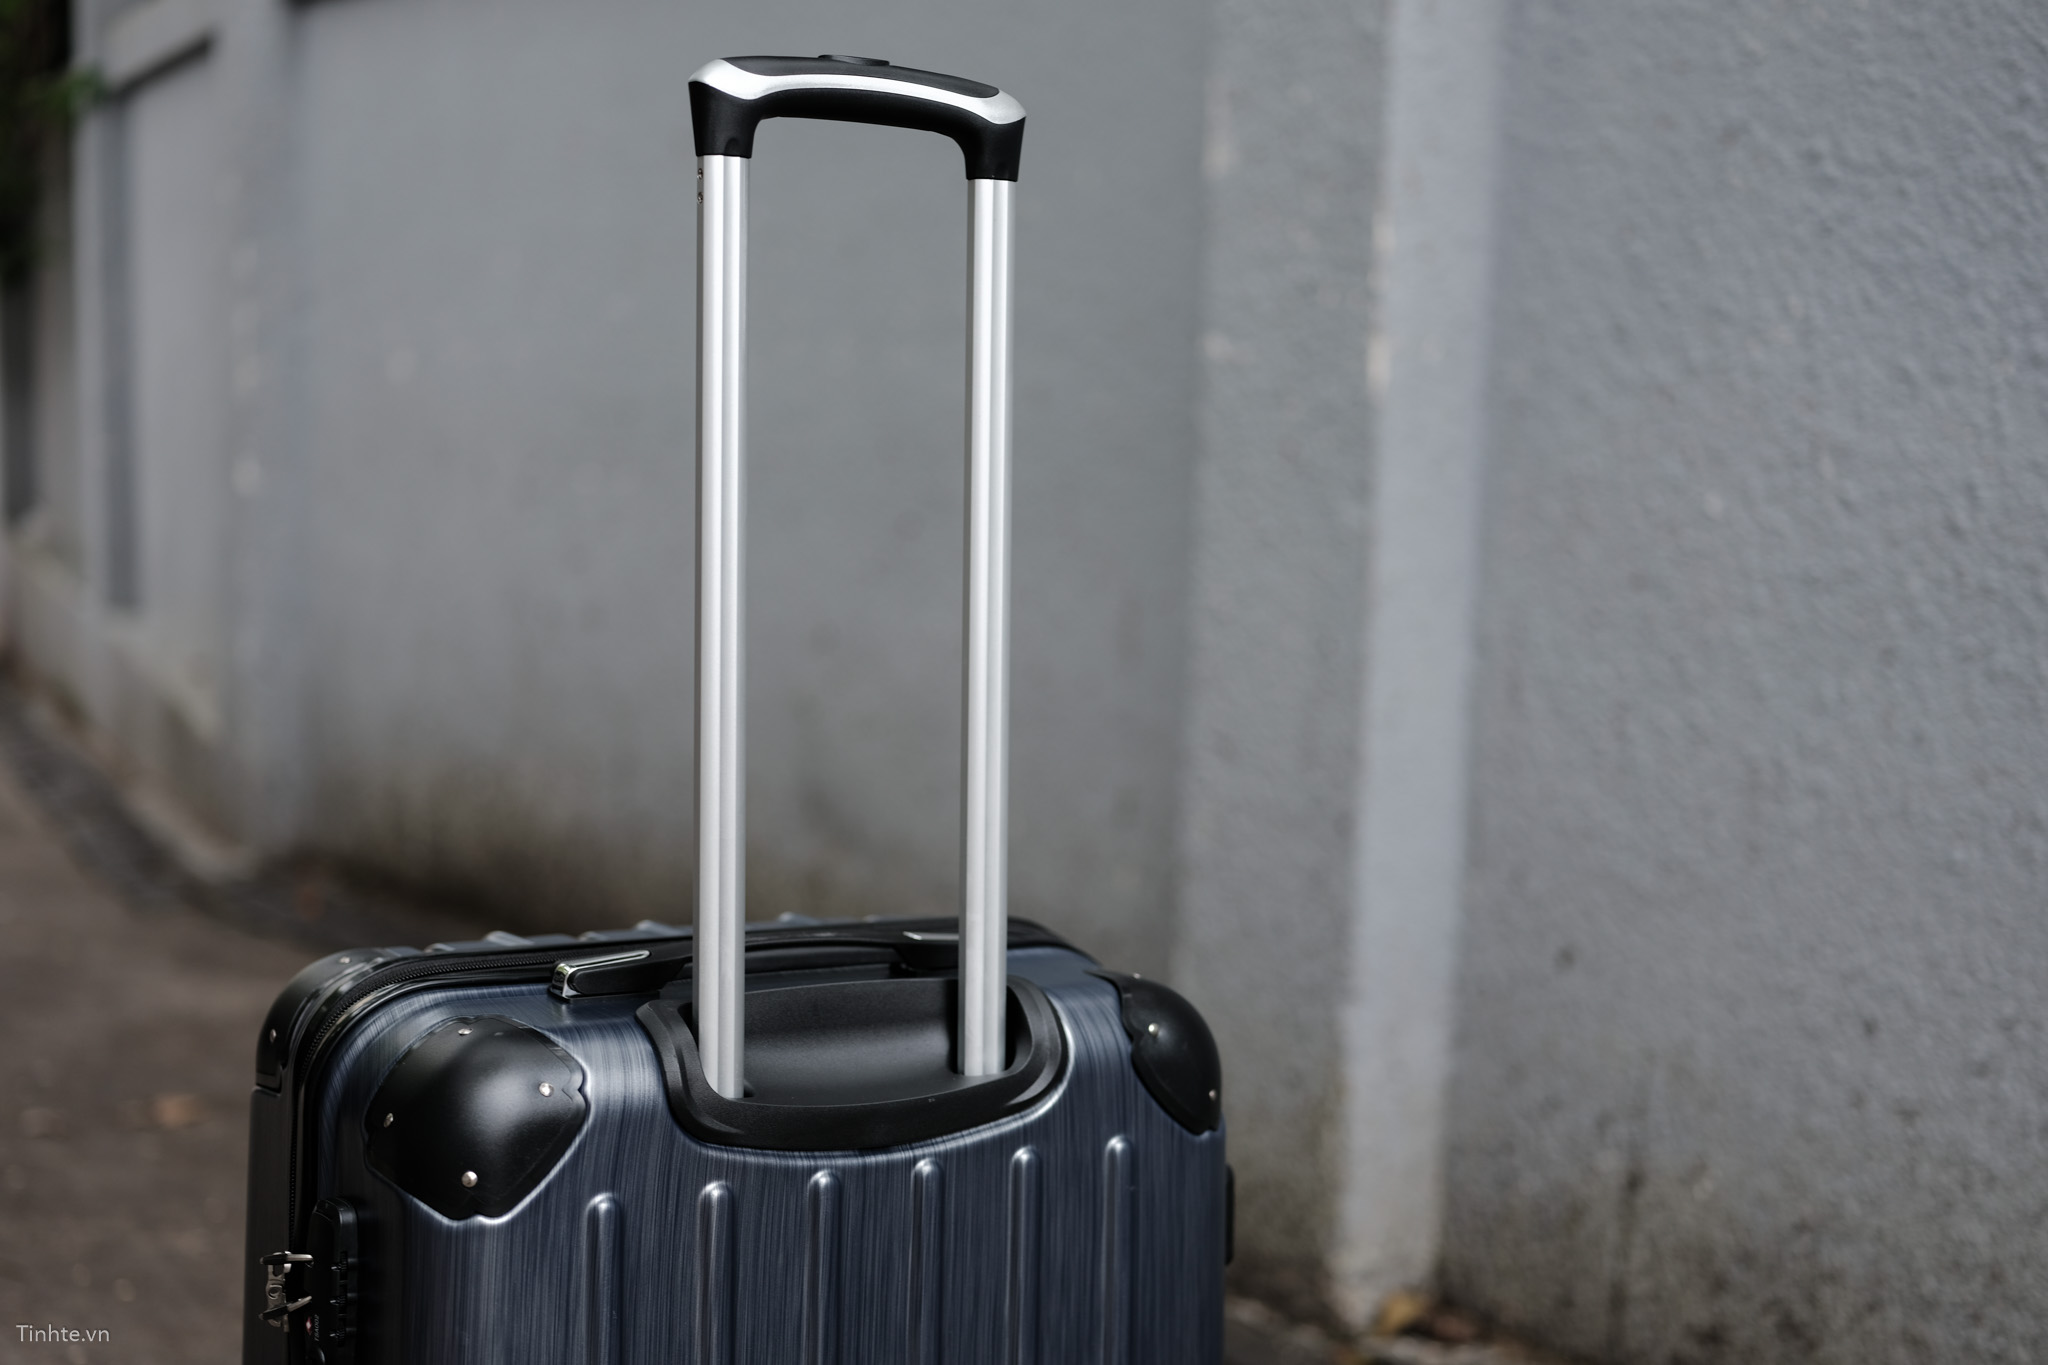 Những yếu tố cần thiết để chọn vali chống móc rạch móc được balo  tặng luôn vali trong hình